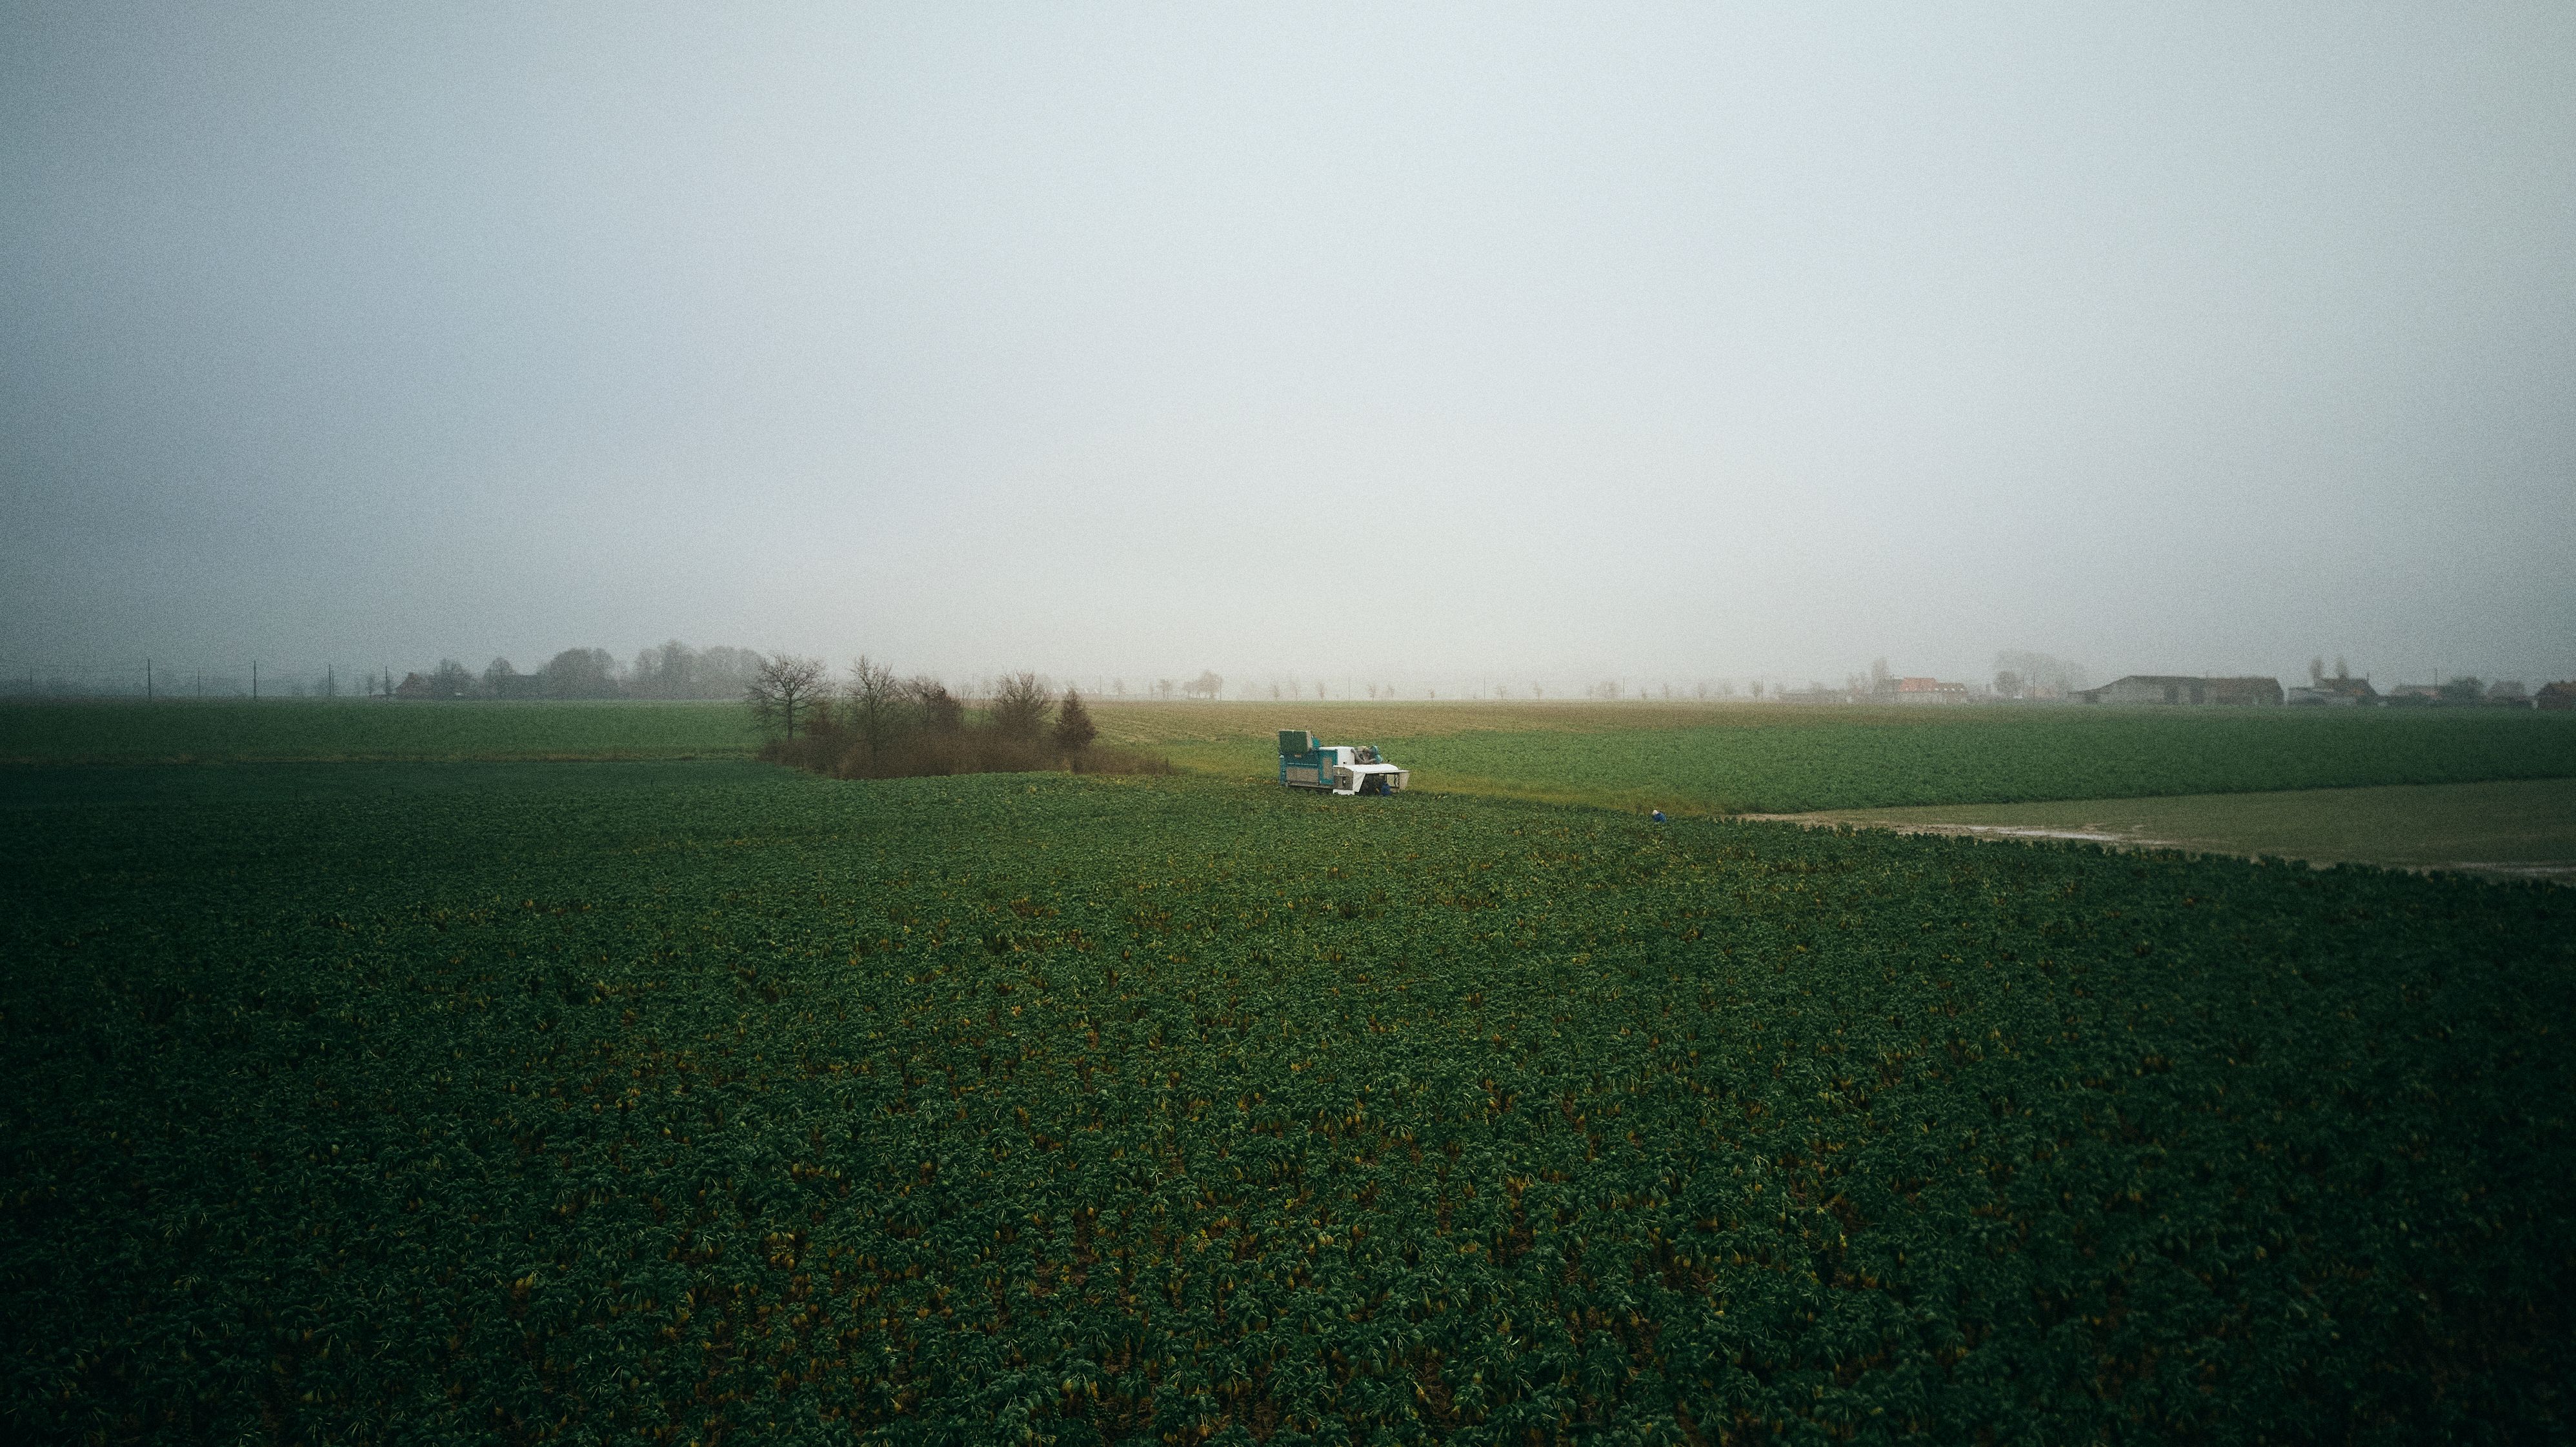 landbouwmachine op het platteland, met boerderijen op de achtergrond